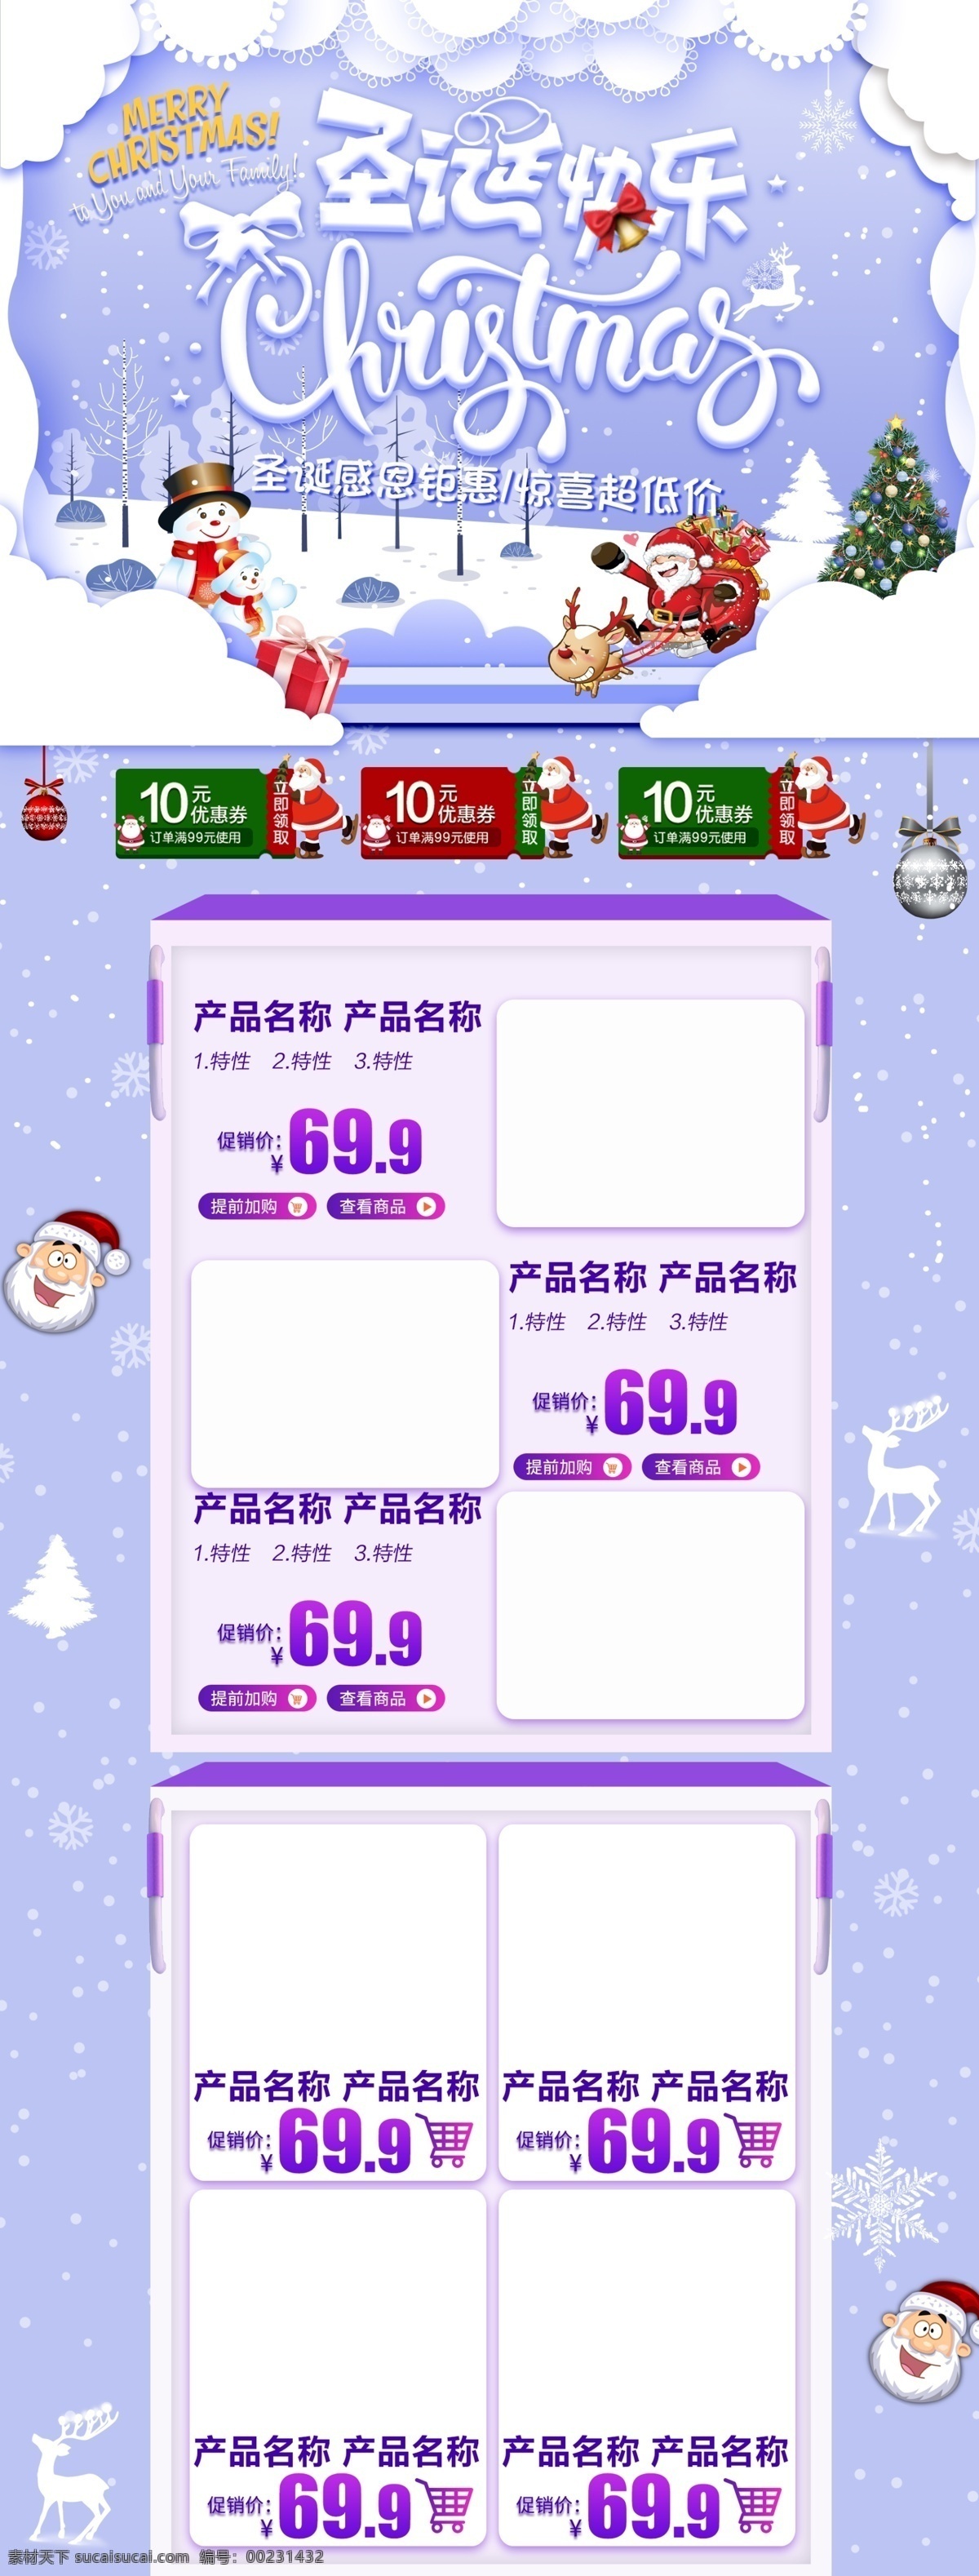 电商 淘宝 圣诞节 紫色 清新 pc 端 首页 简约 大气 时尚 圣诞老人 雪人